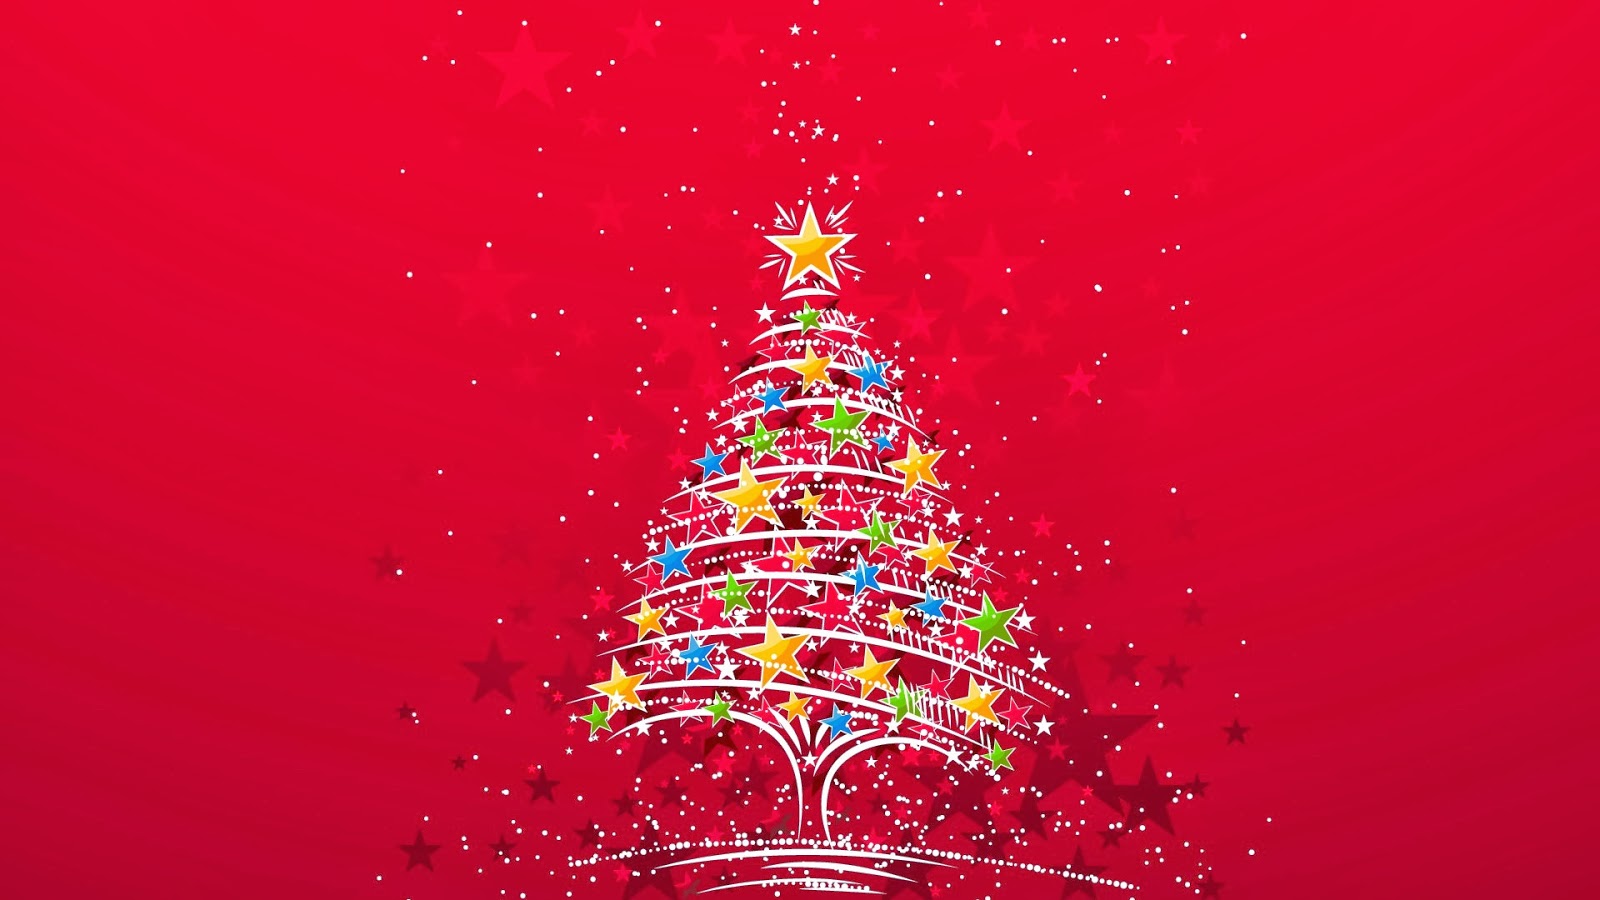 Wallpaper For Desktop HDtv 1080p Christmas Colorful